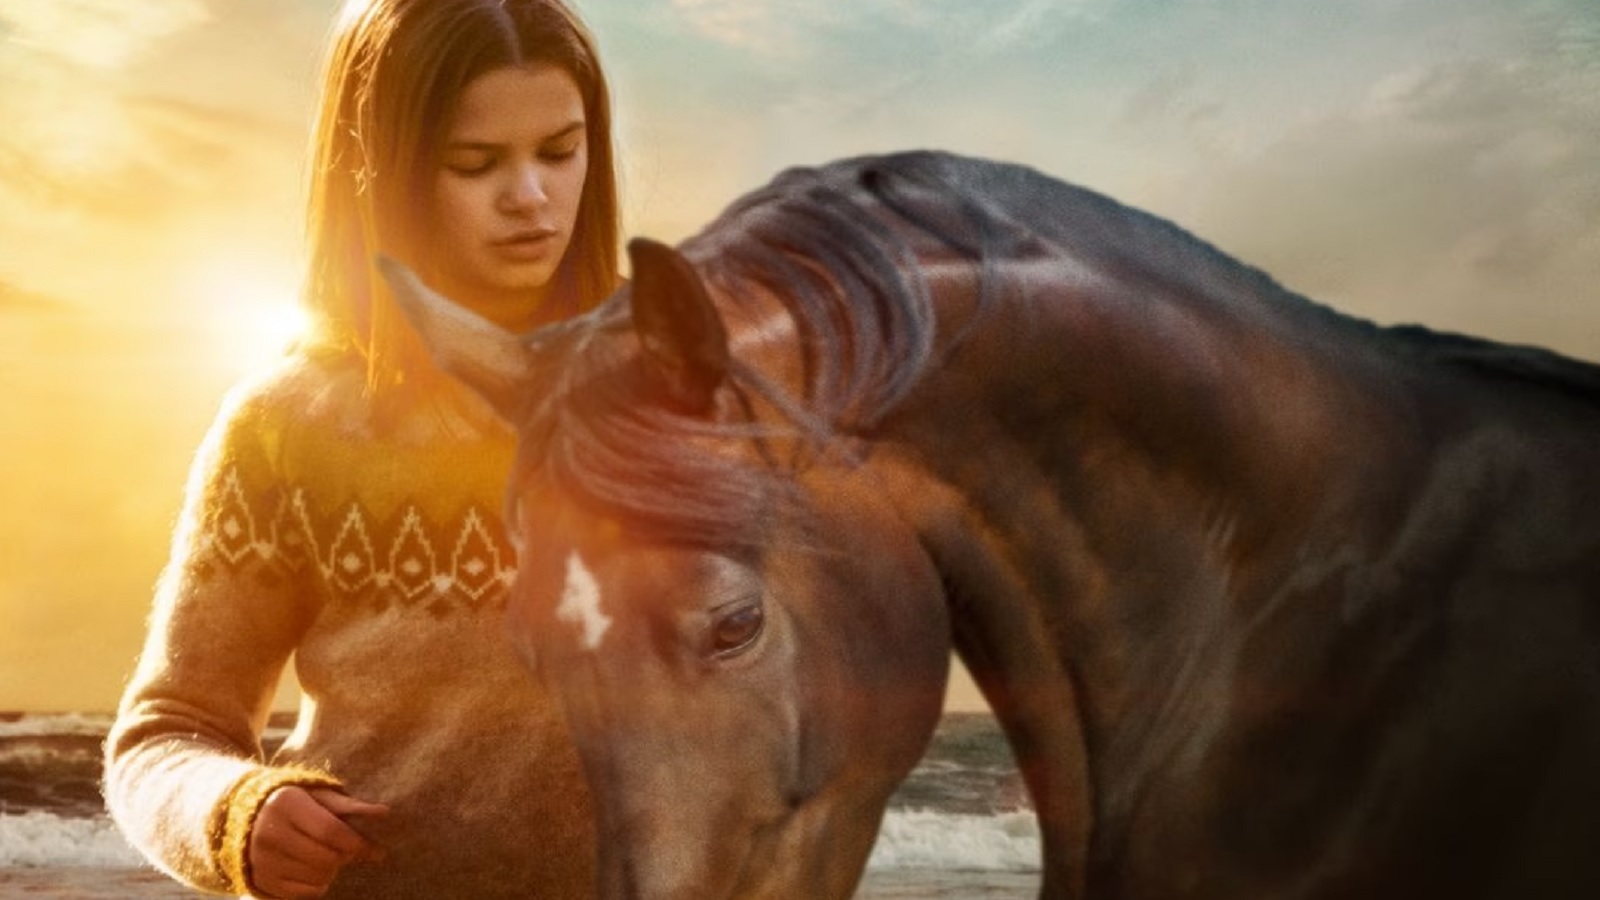 Il mio amico Tempesta, la recensione: il film sull'amicizia tra una ragazza e un cavallo senza patetismi